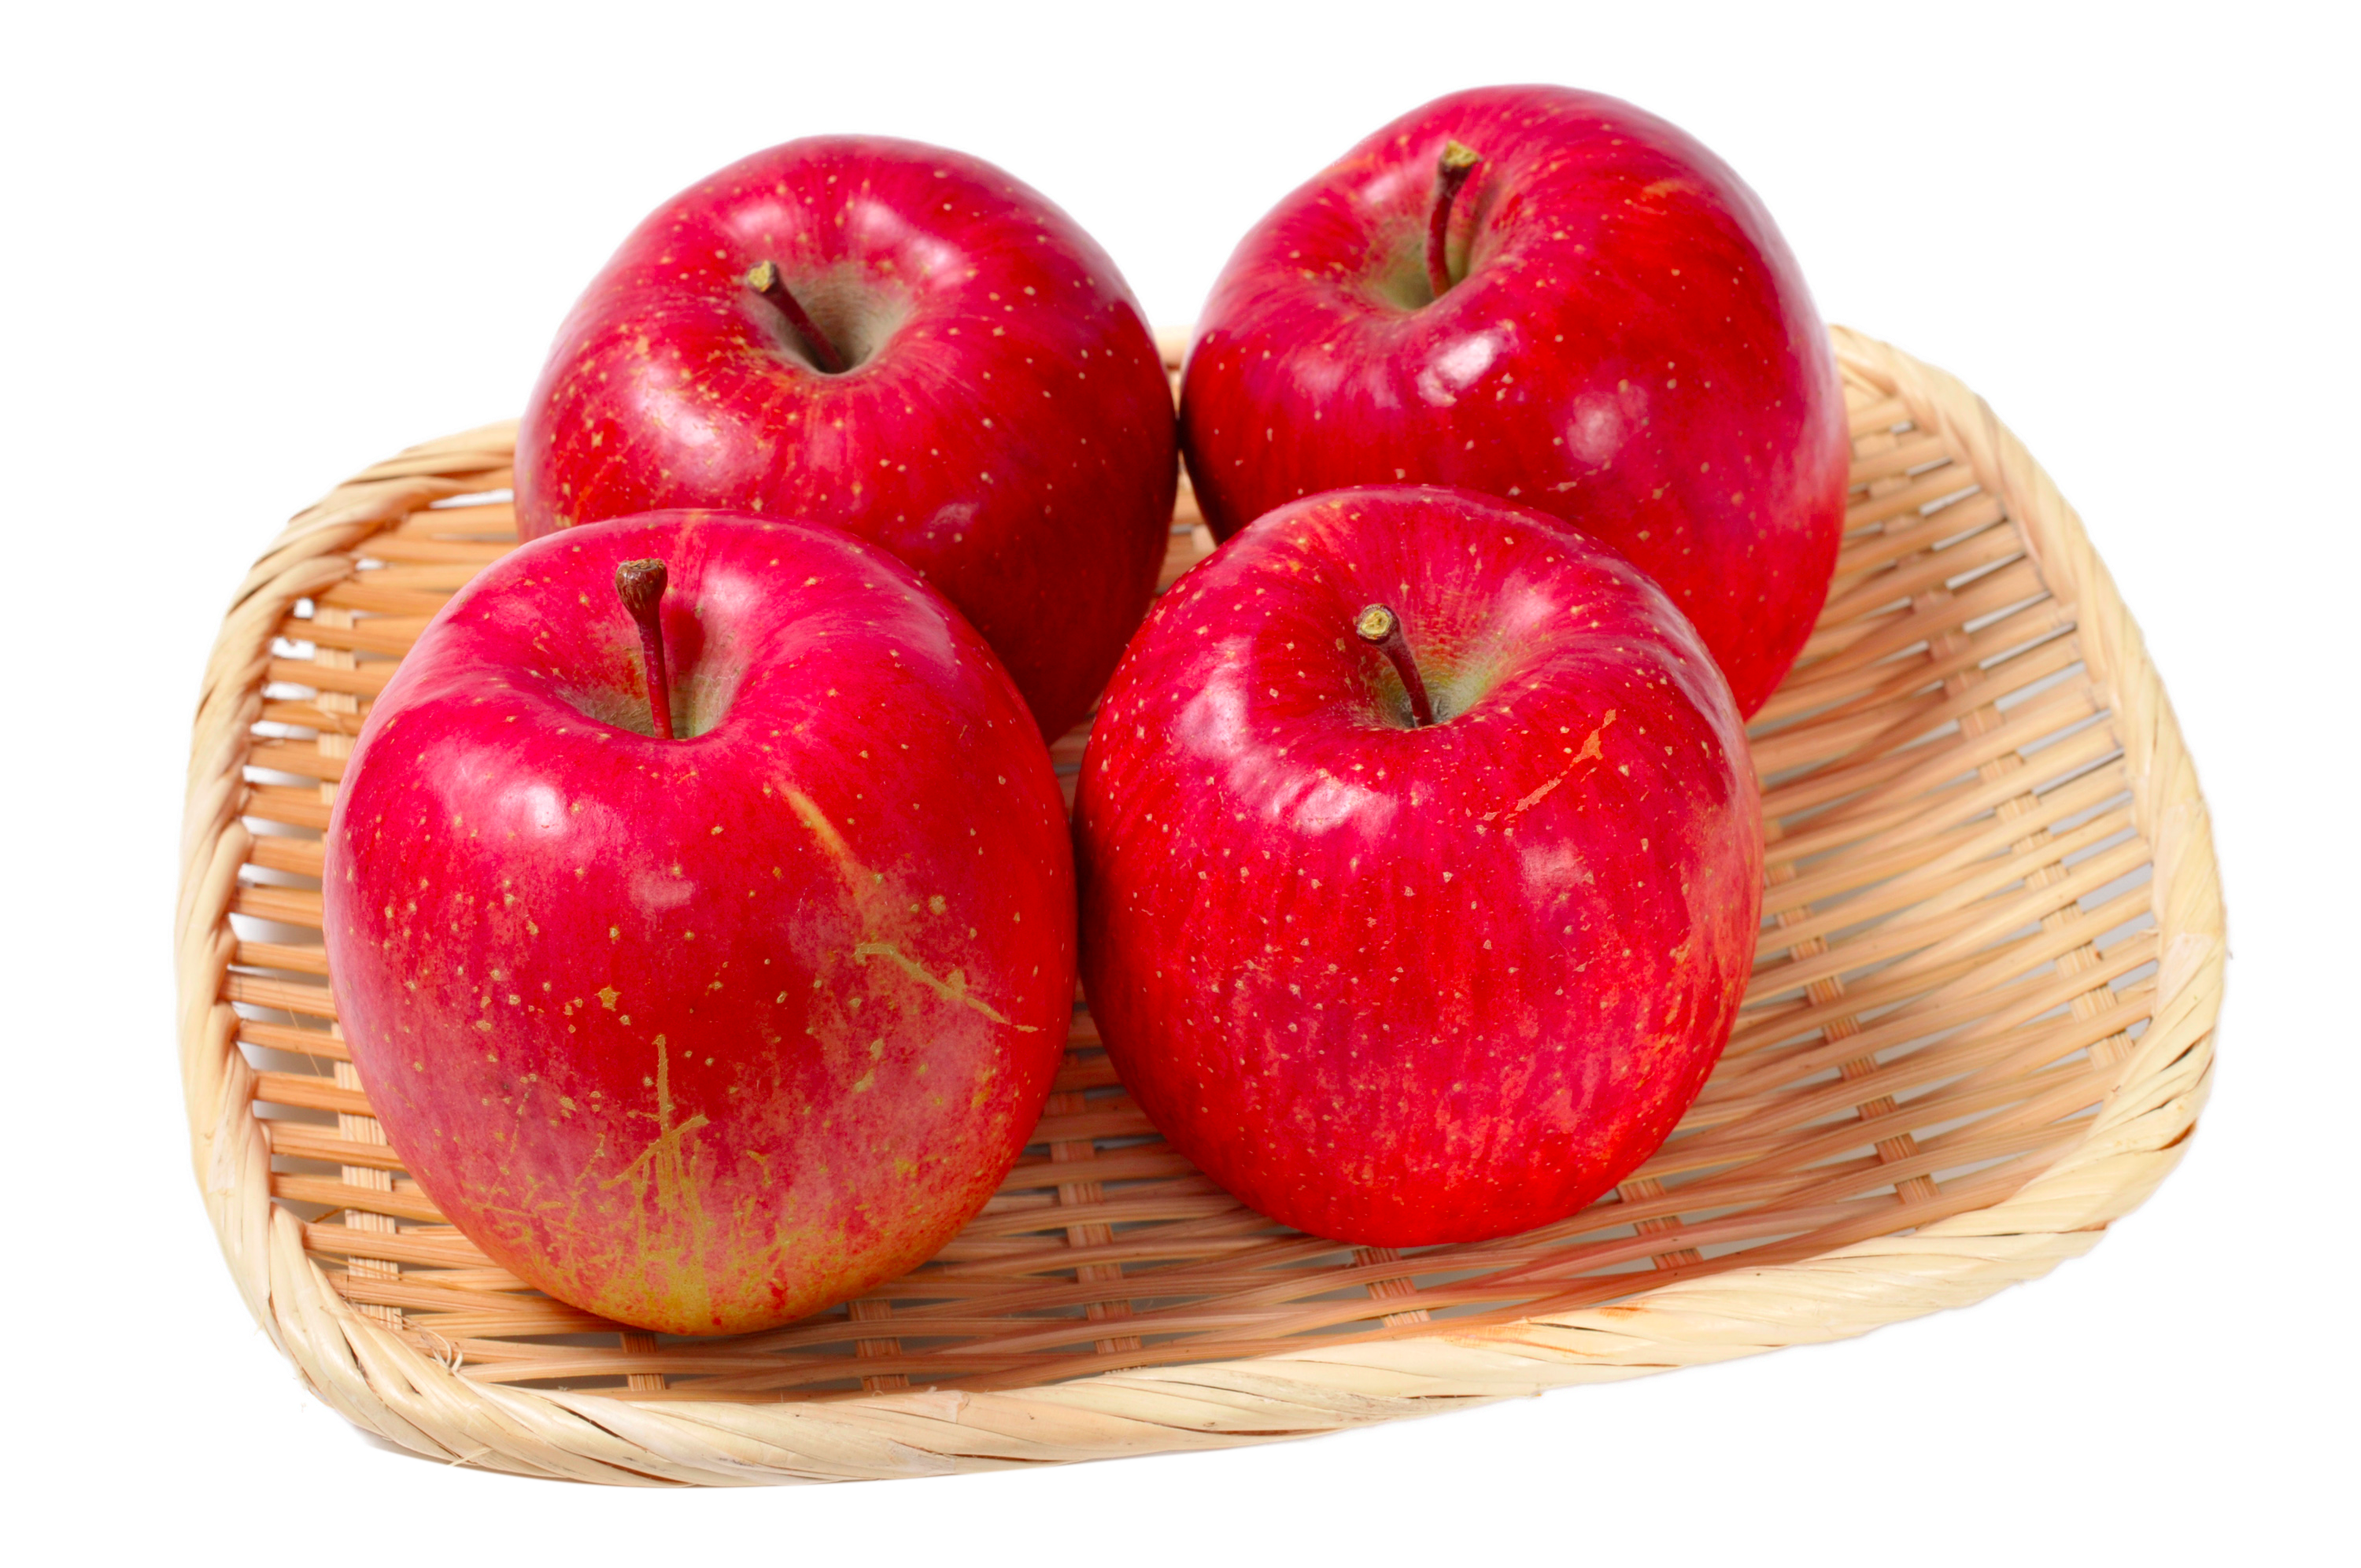 Завтрак 2 яблока. Яблоки красные. Яблоко на тарелке. Красные яблоки на тарелке. Яблочки на тарелке.